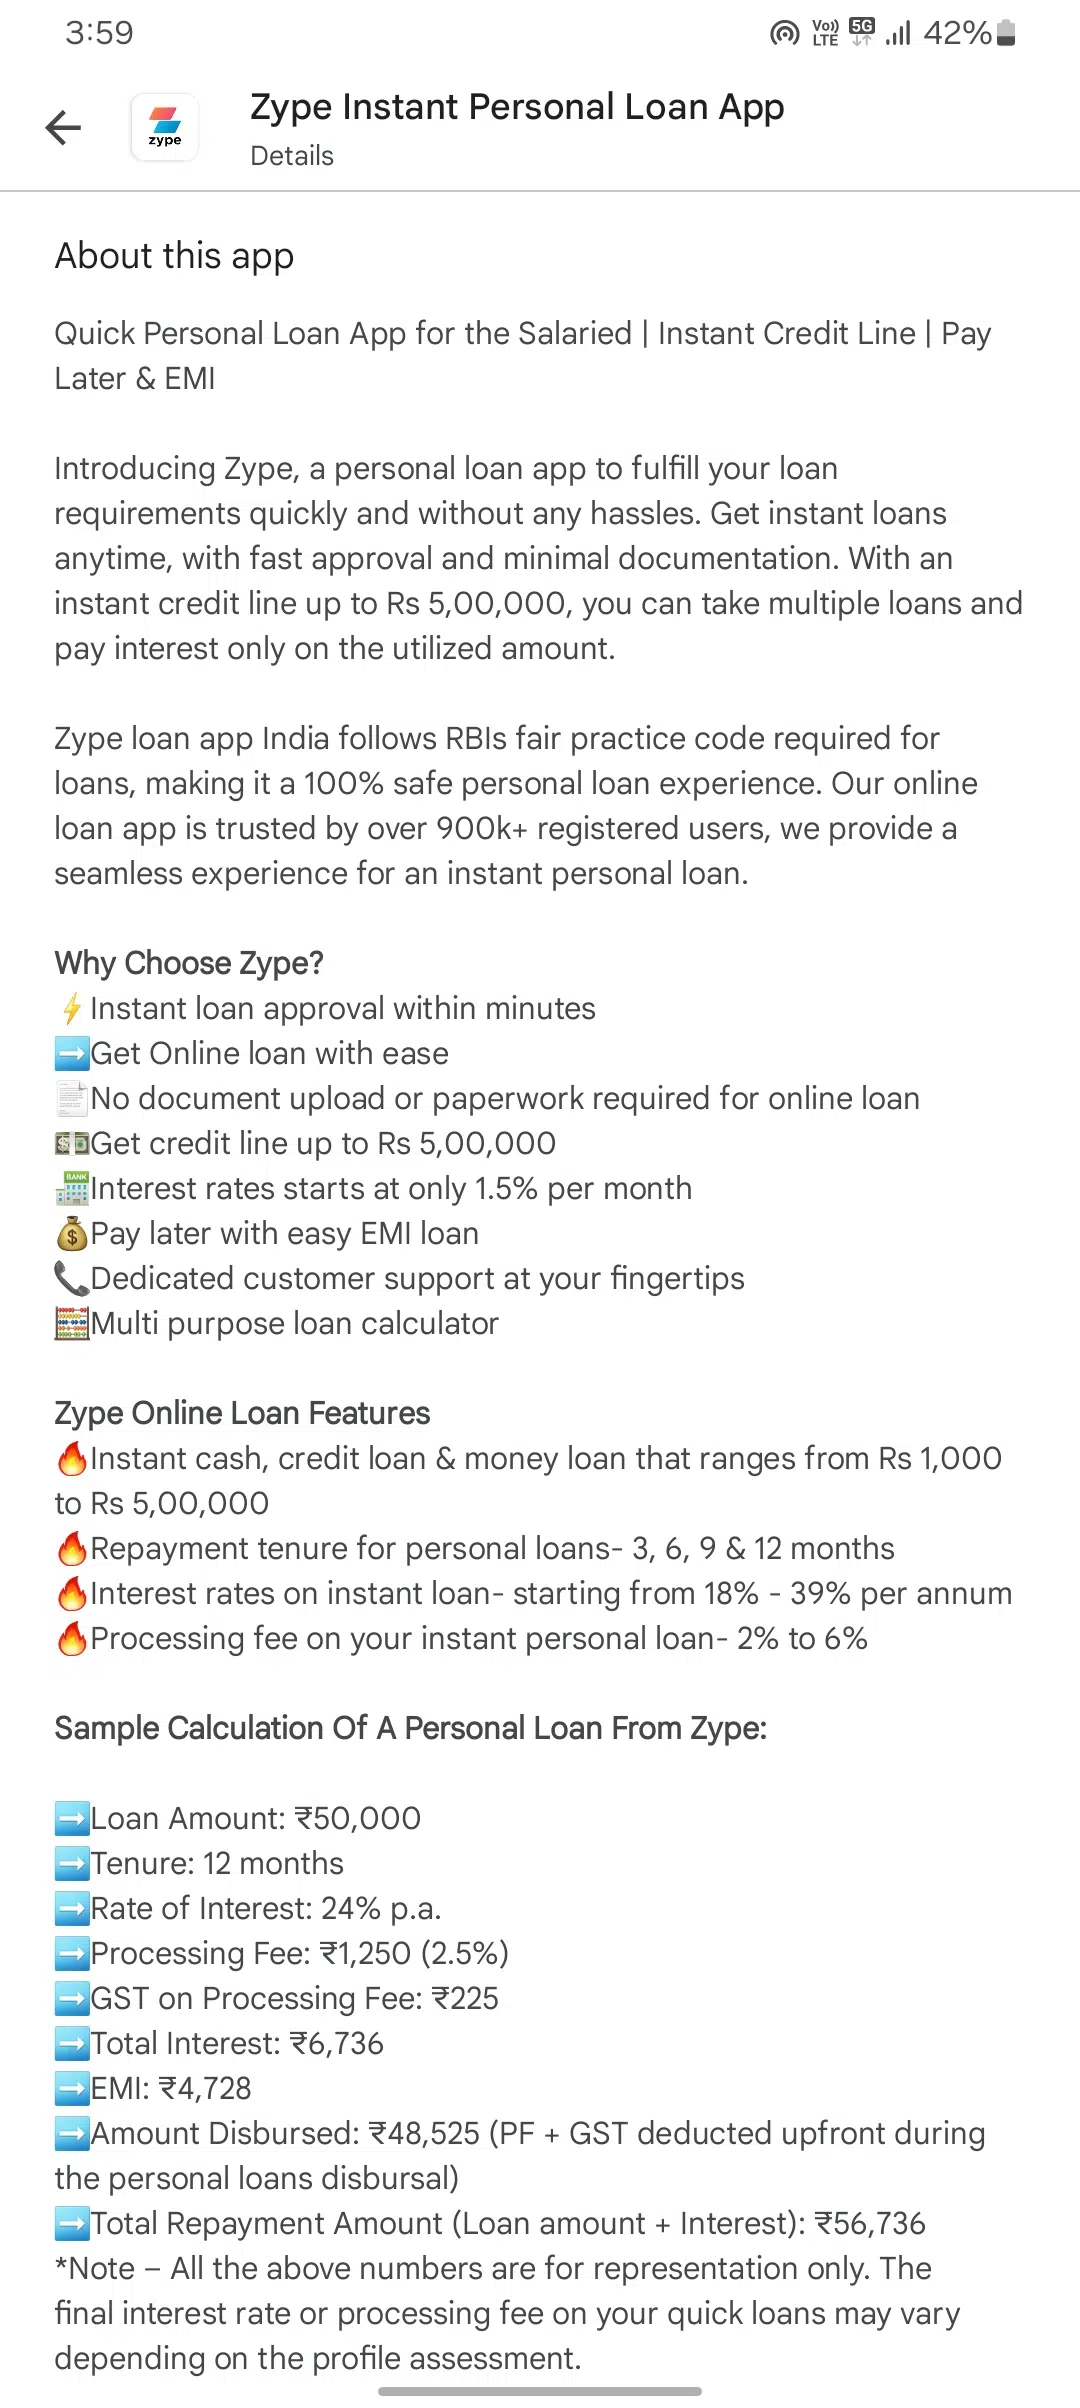 zype app details